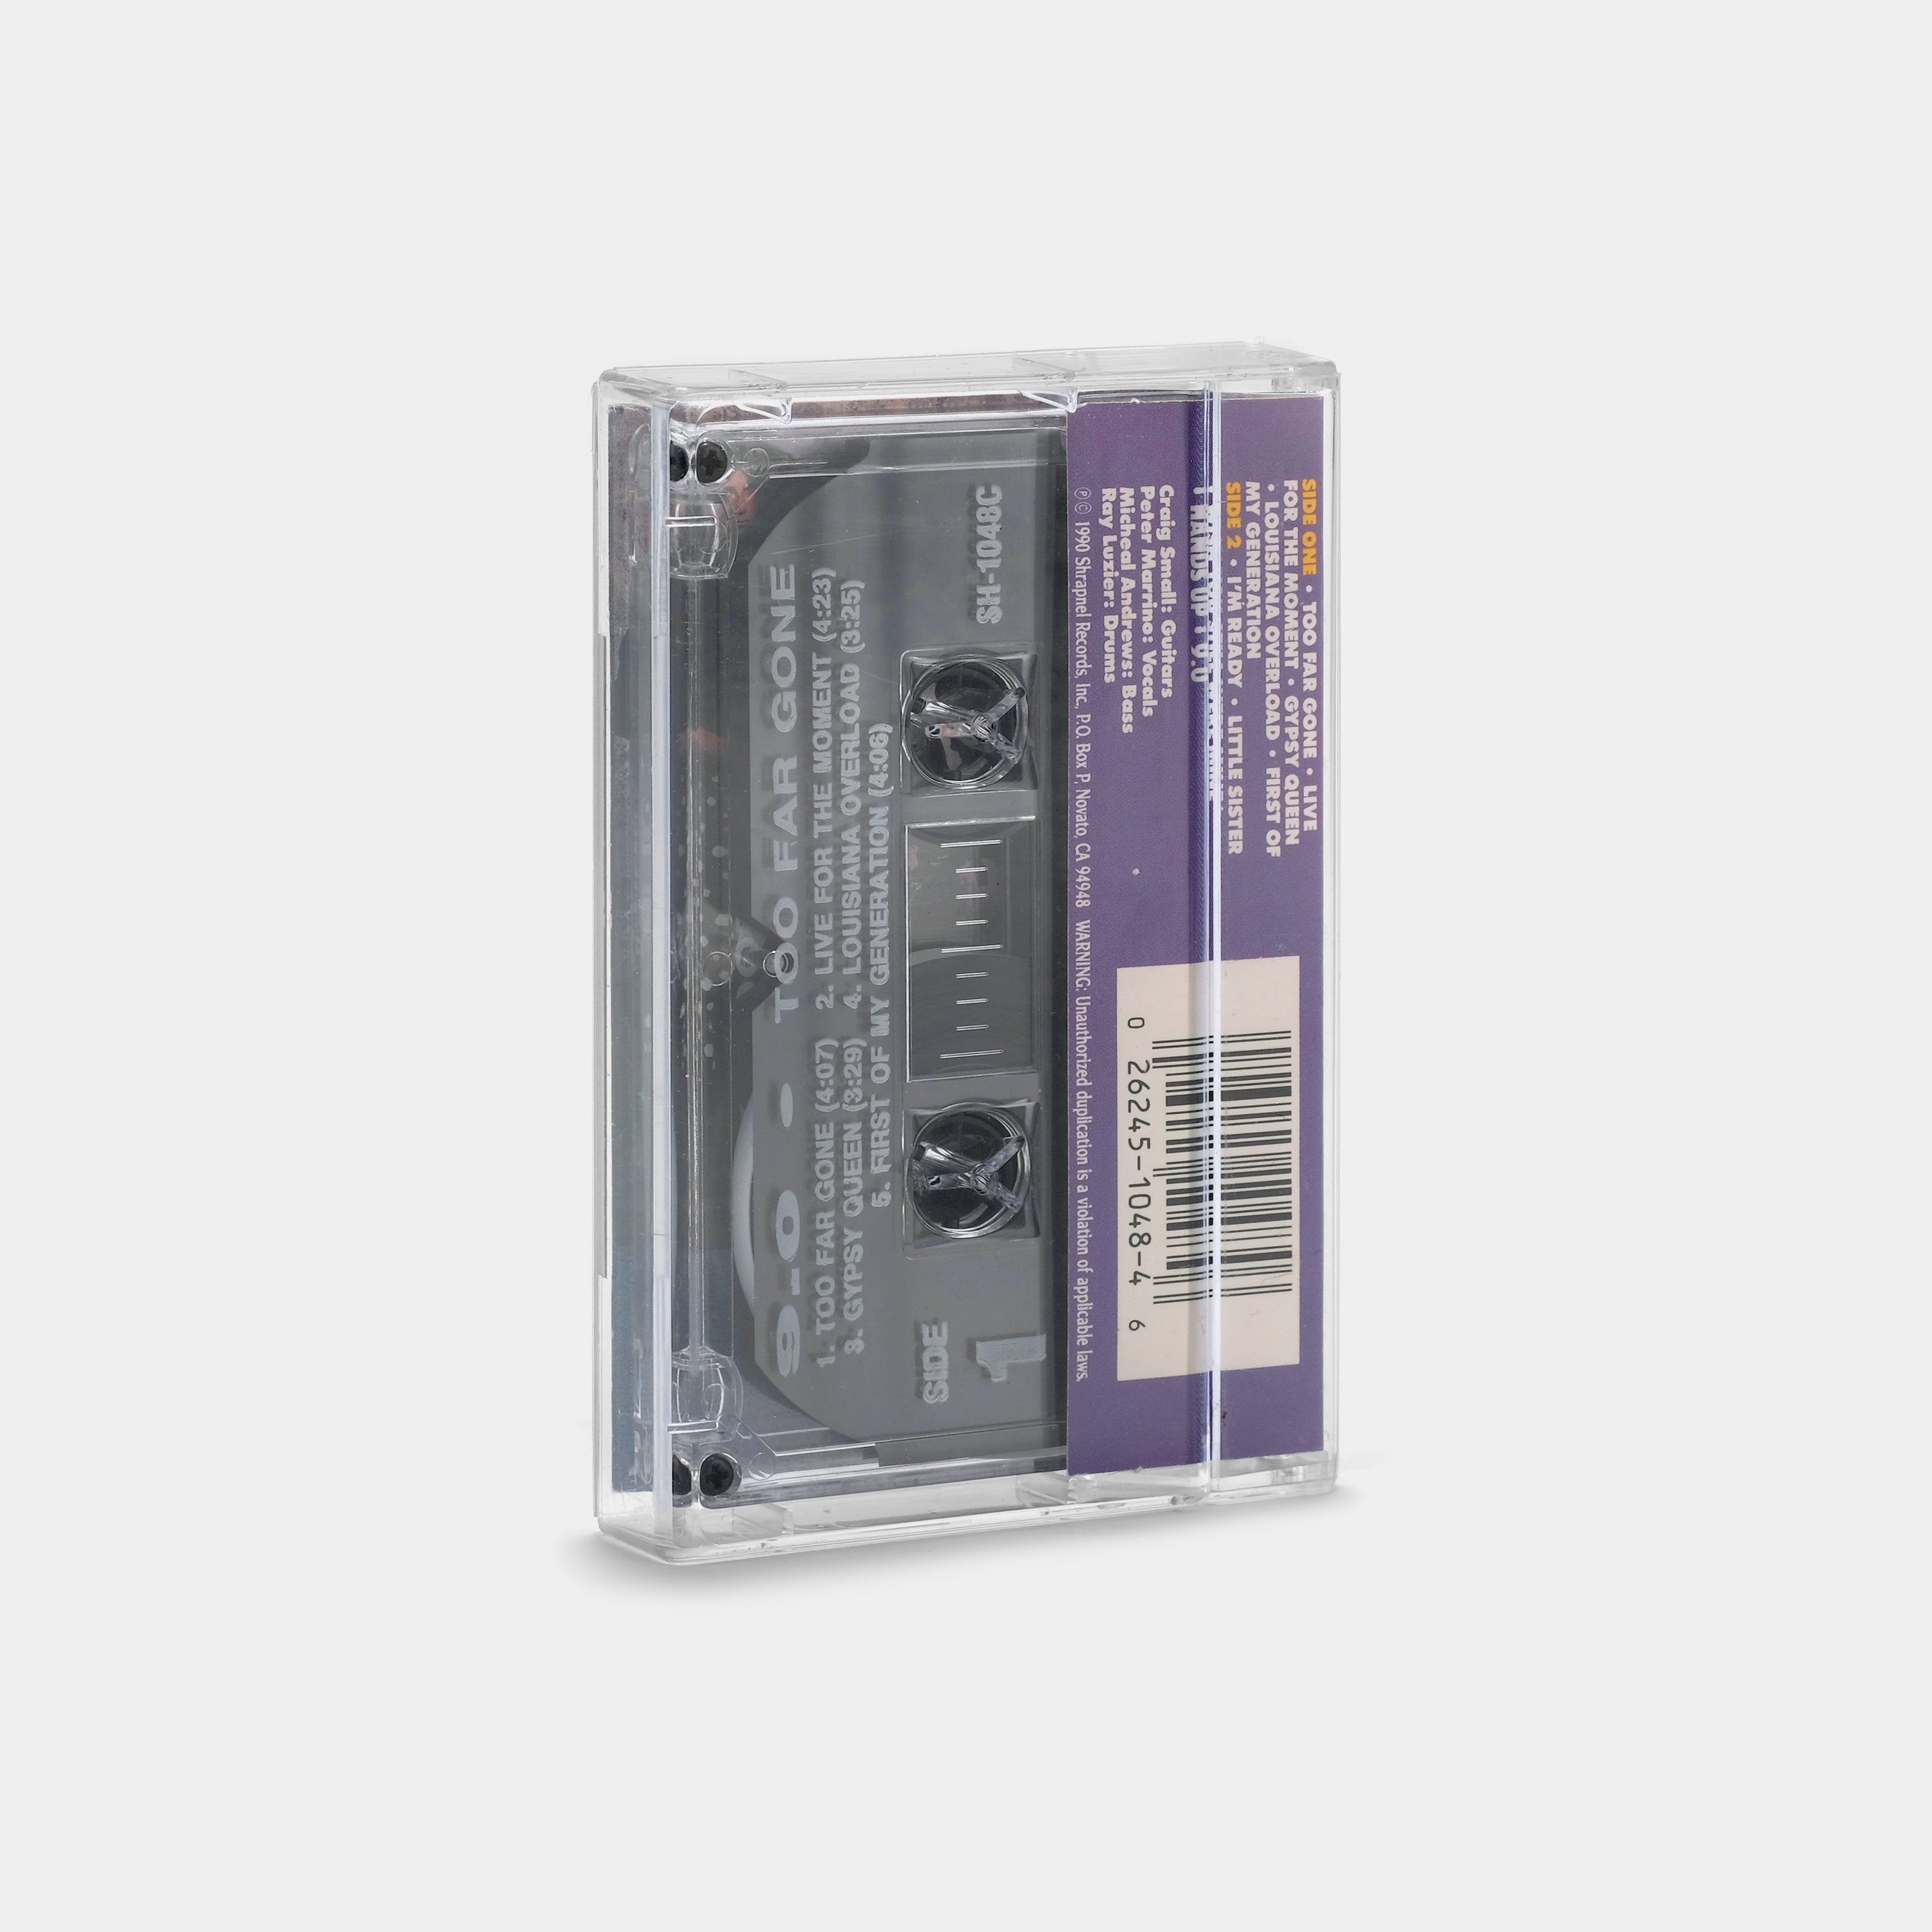 9.0 - Too Far Gone Cassette Tape